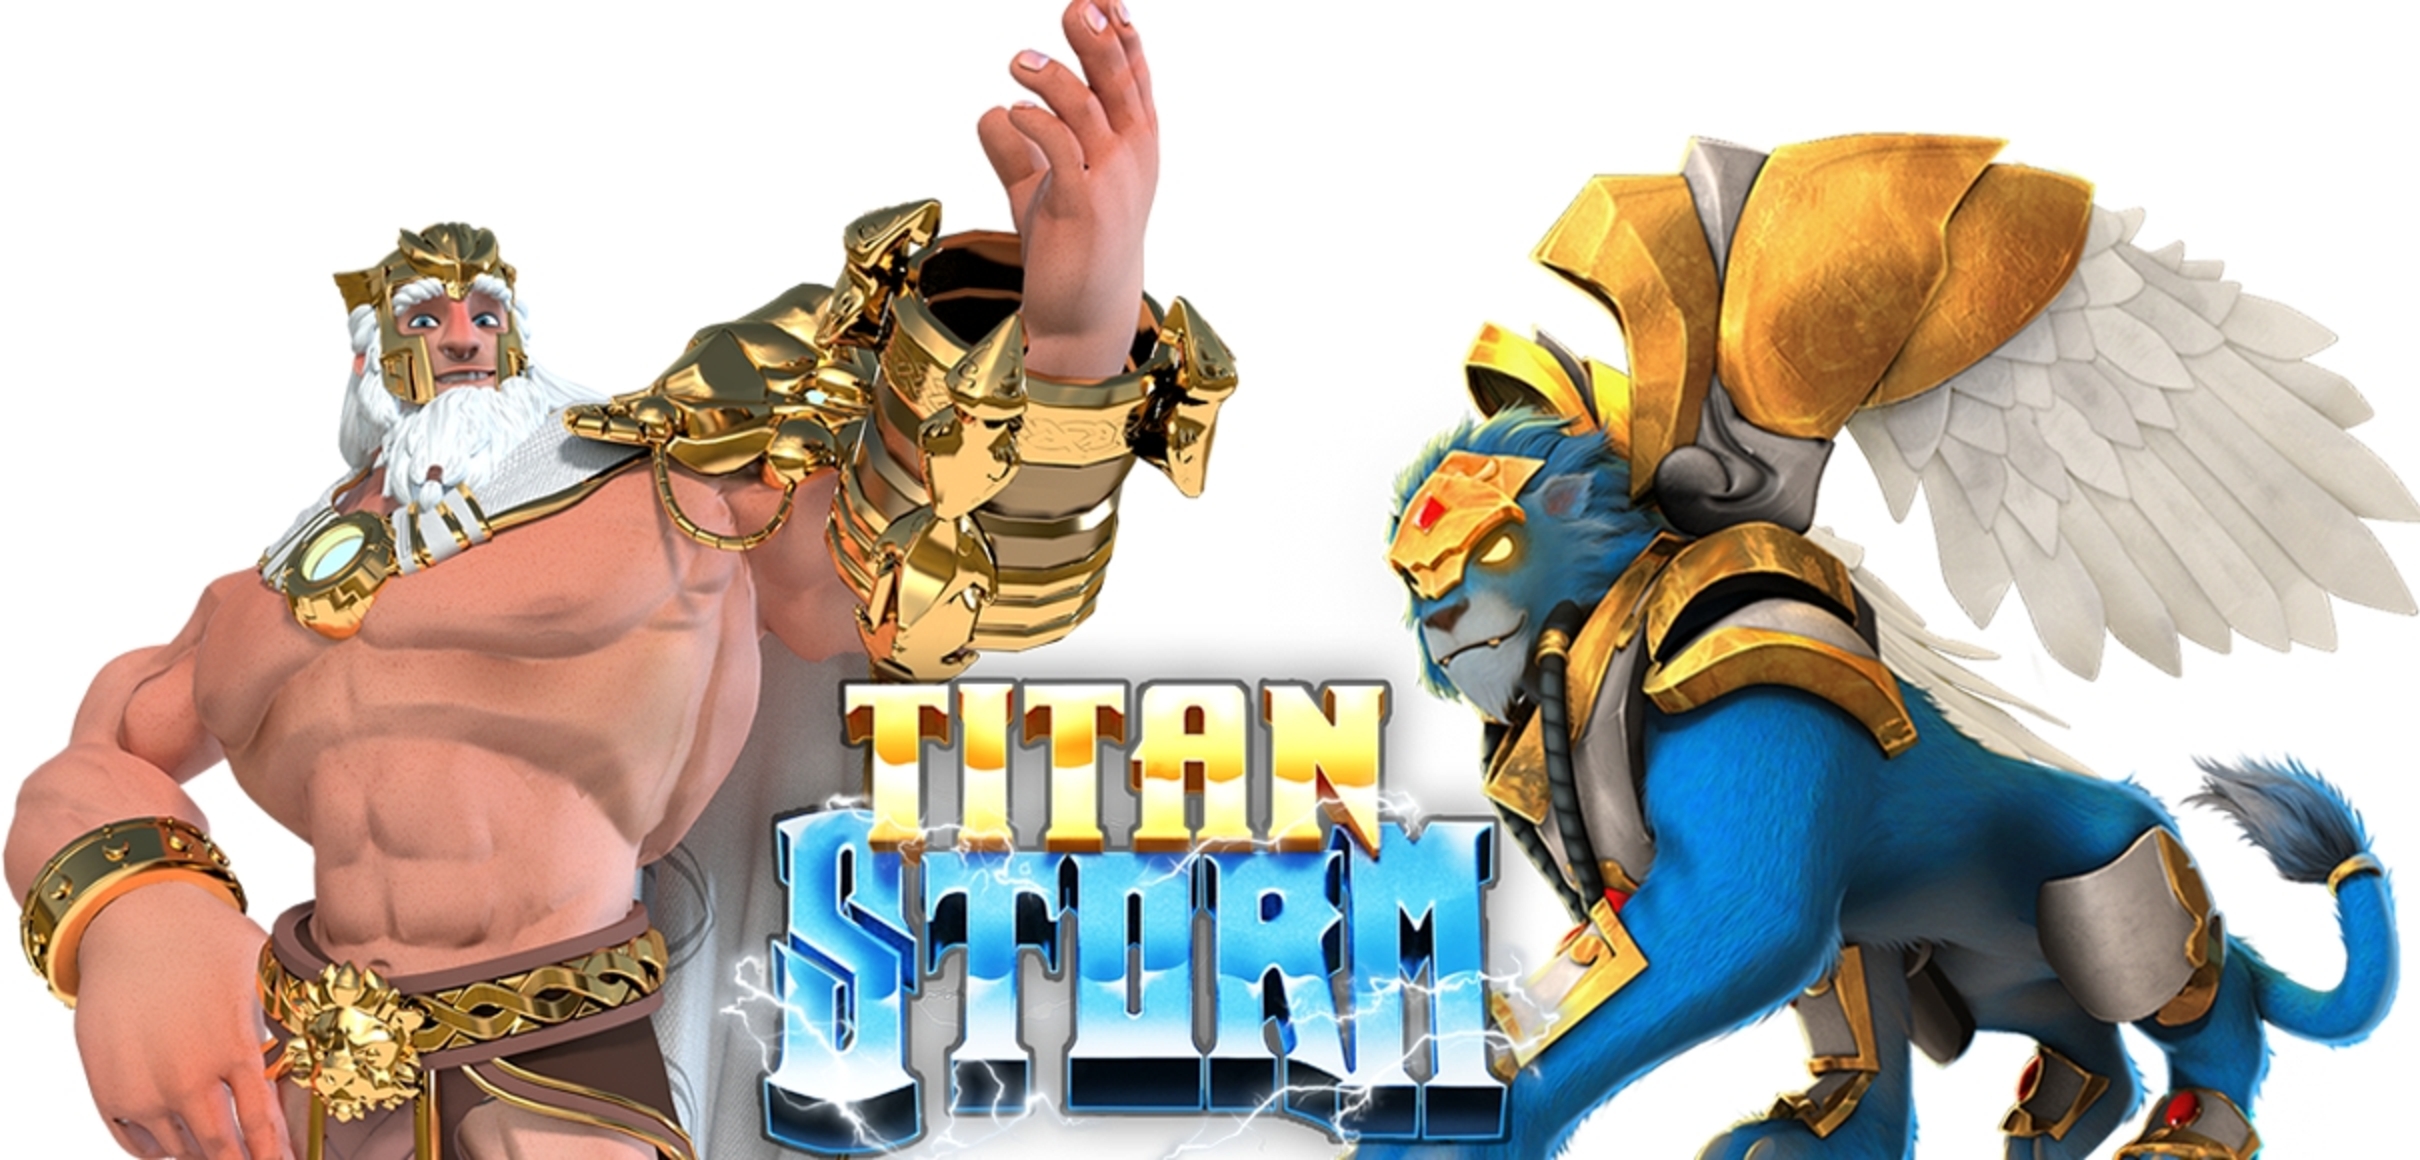 Titan Storm demo